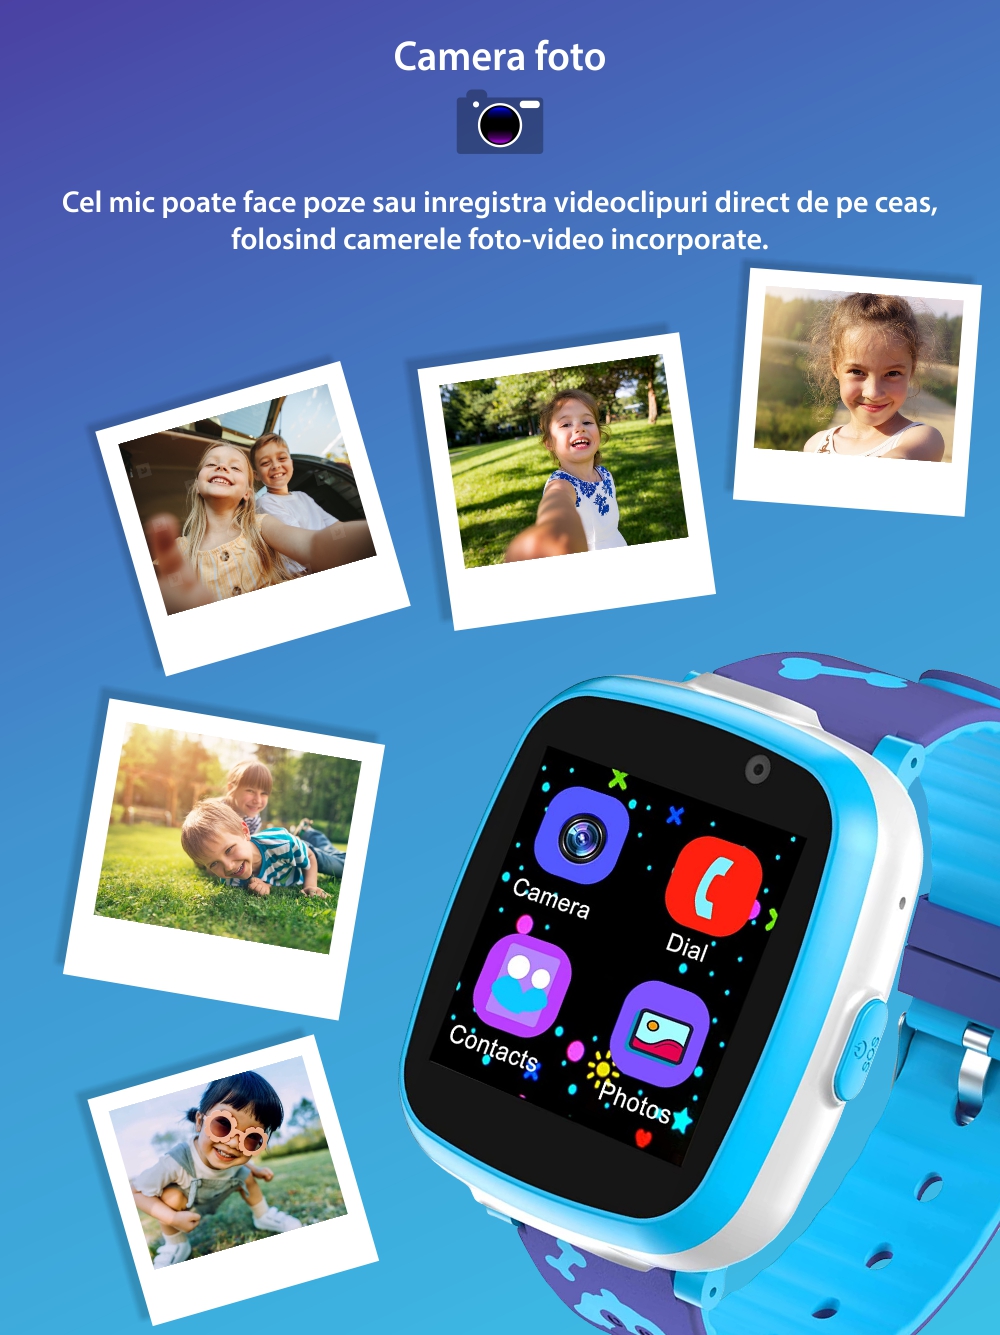 Ceas Smartwatch Pentru Copii Xkids A10 fara GPS, cu Funtie telefon, Jocuri, Camera, Contacte, Alarma, Cronometru, Albastru